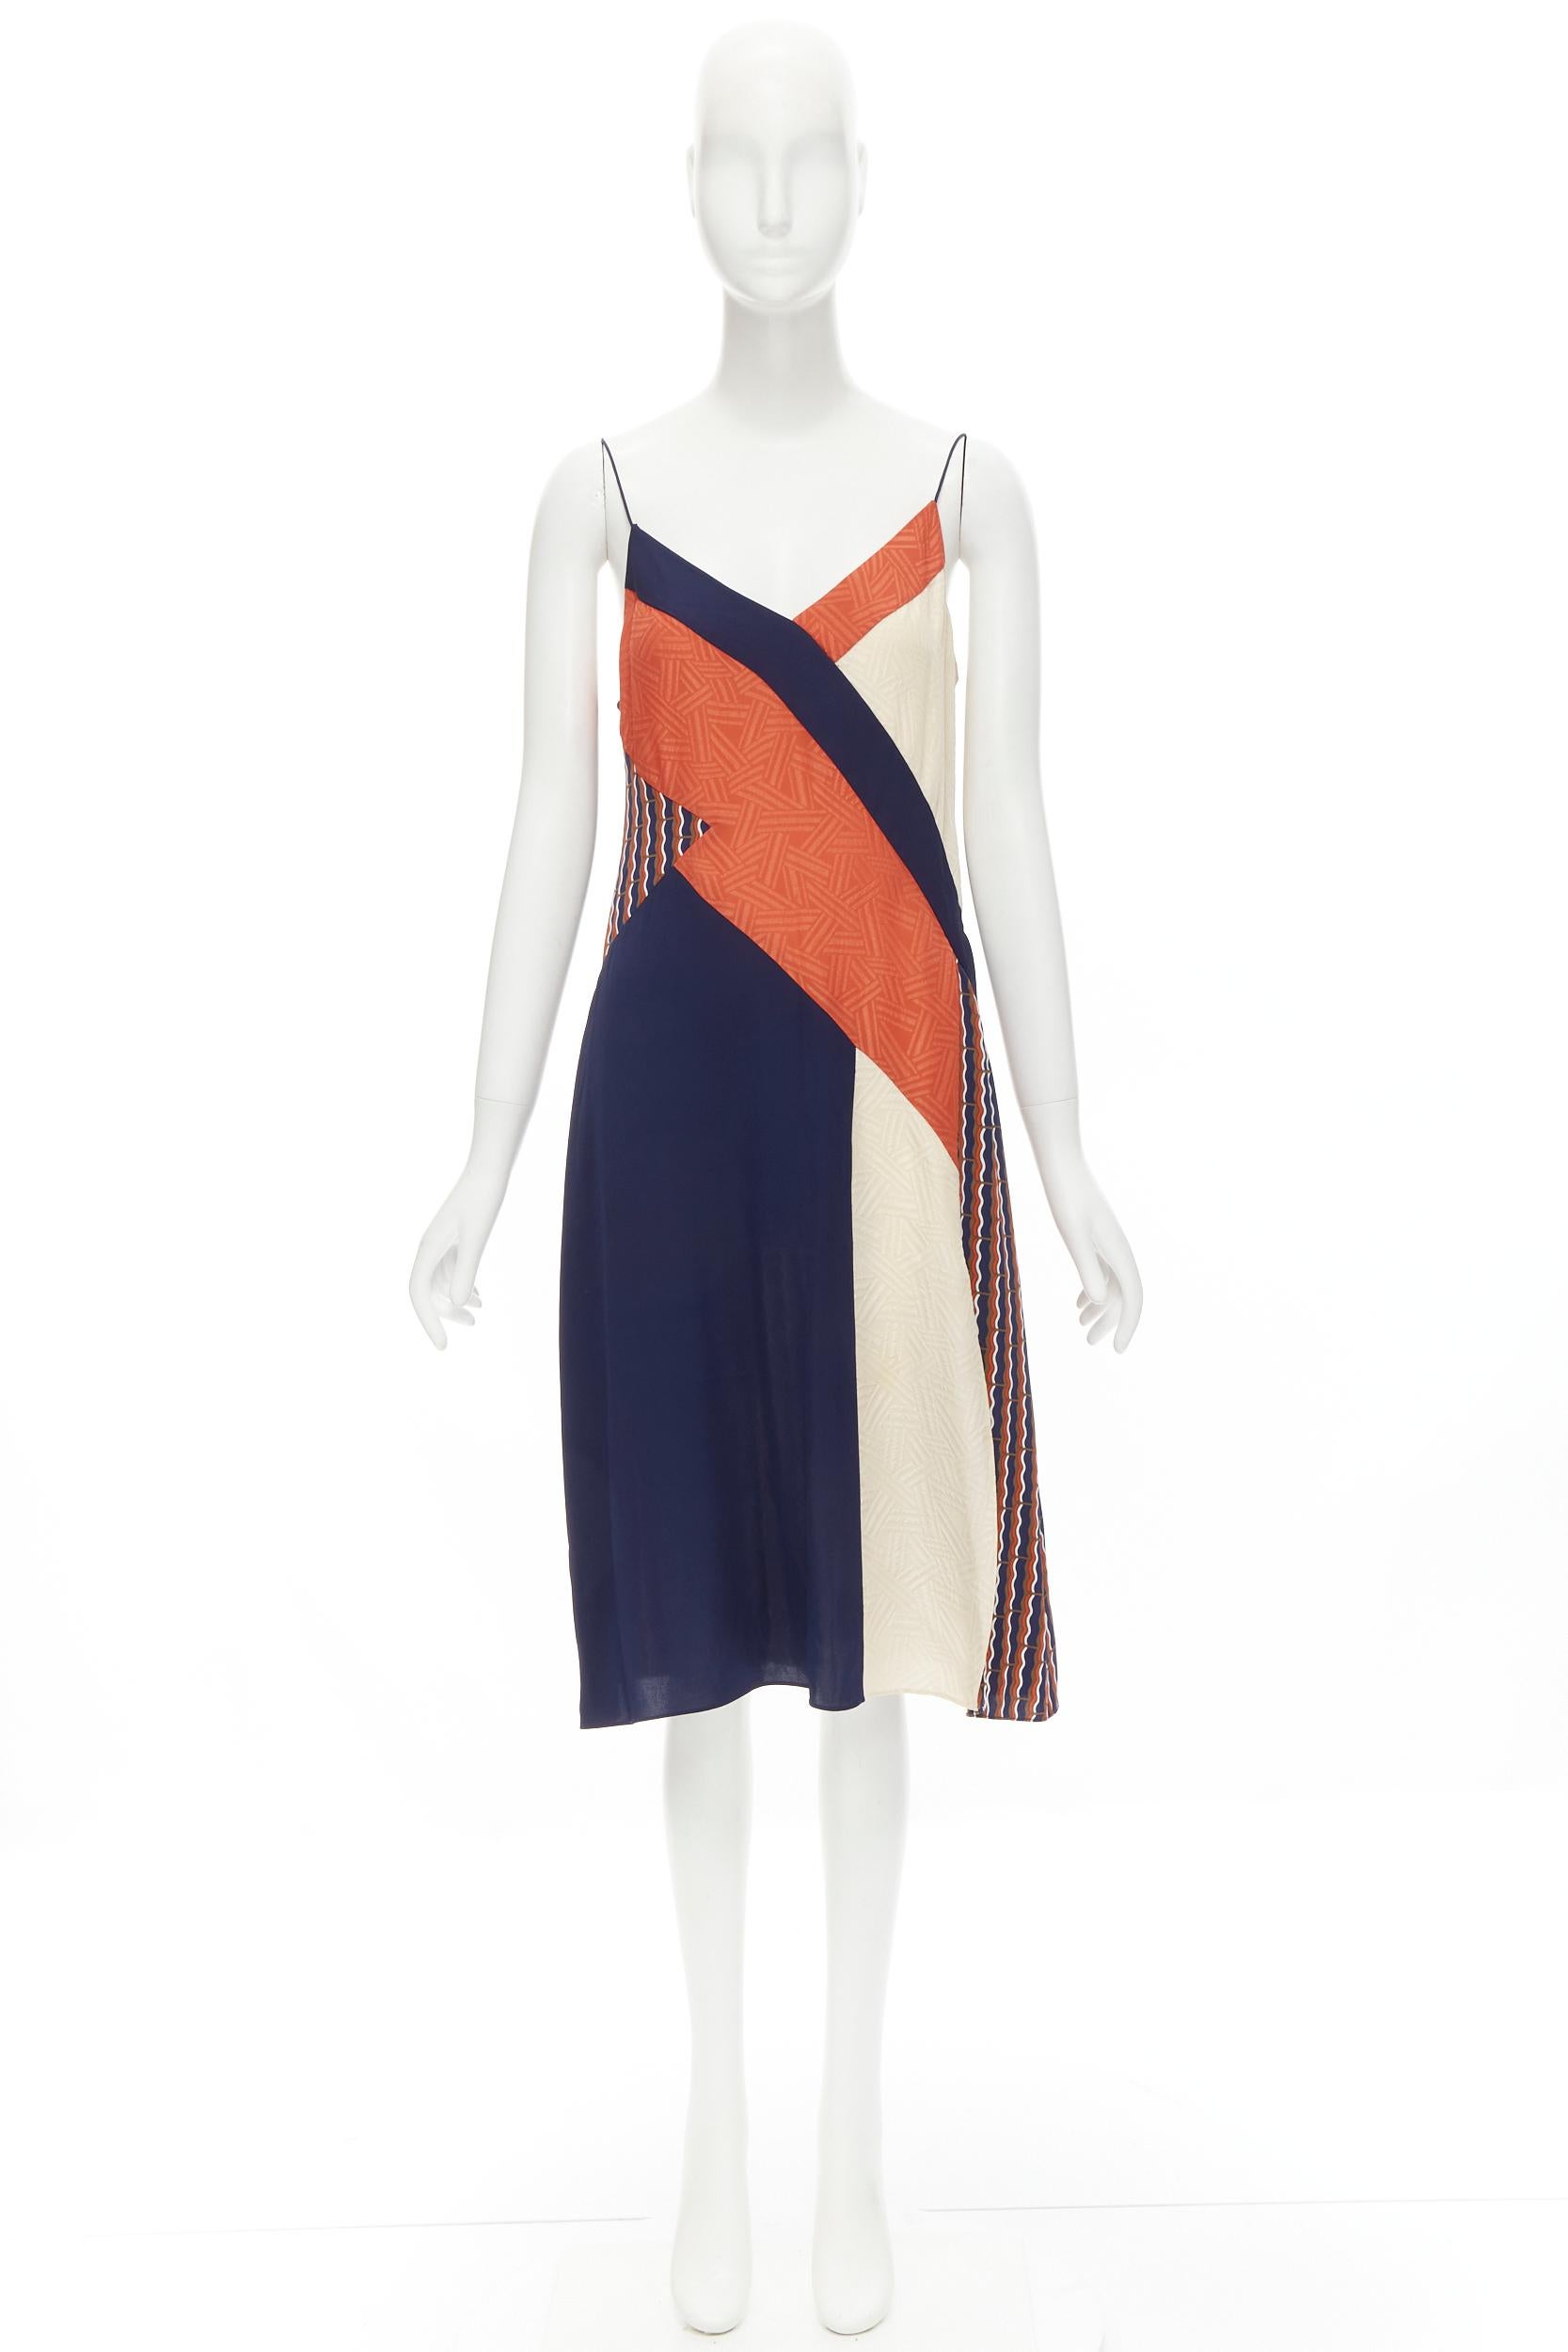 DIANE VON FURSTENBURG orange blue geometric colorblocked summer silk dress US8 M For Sale 2